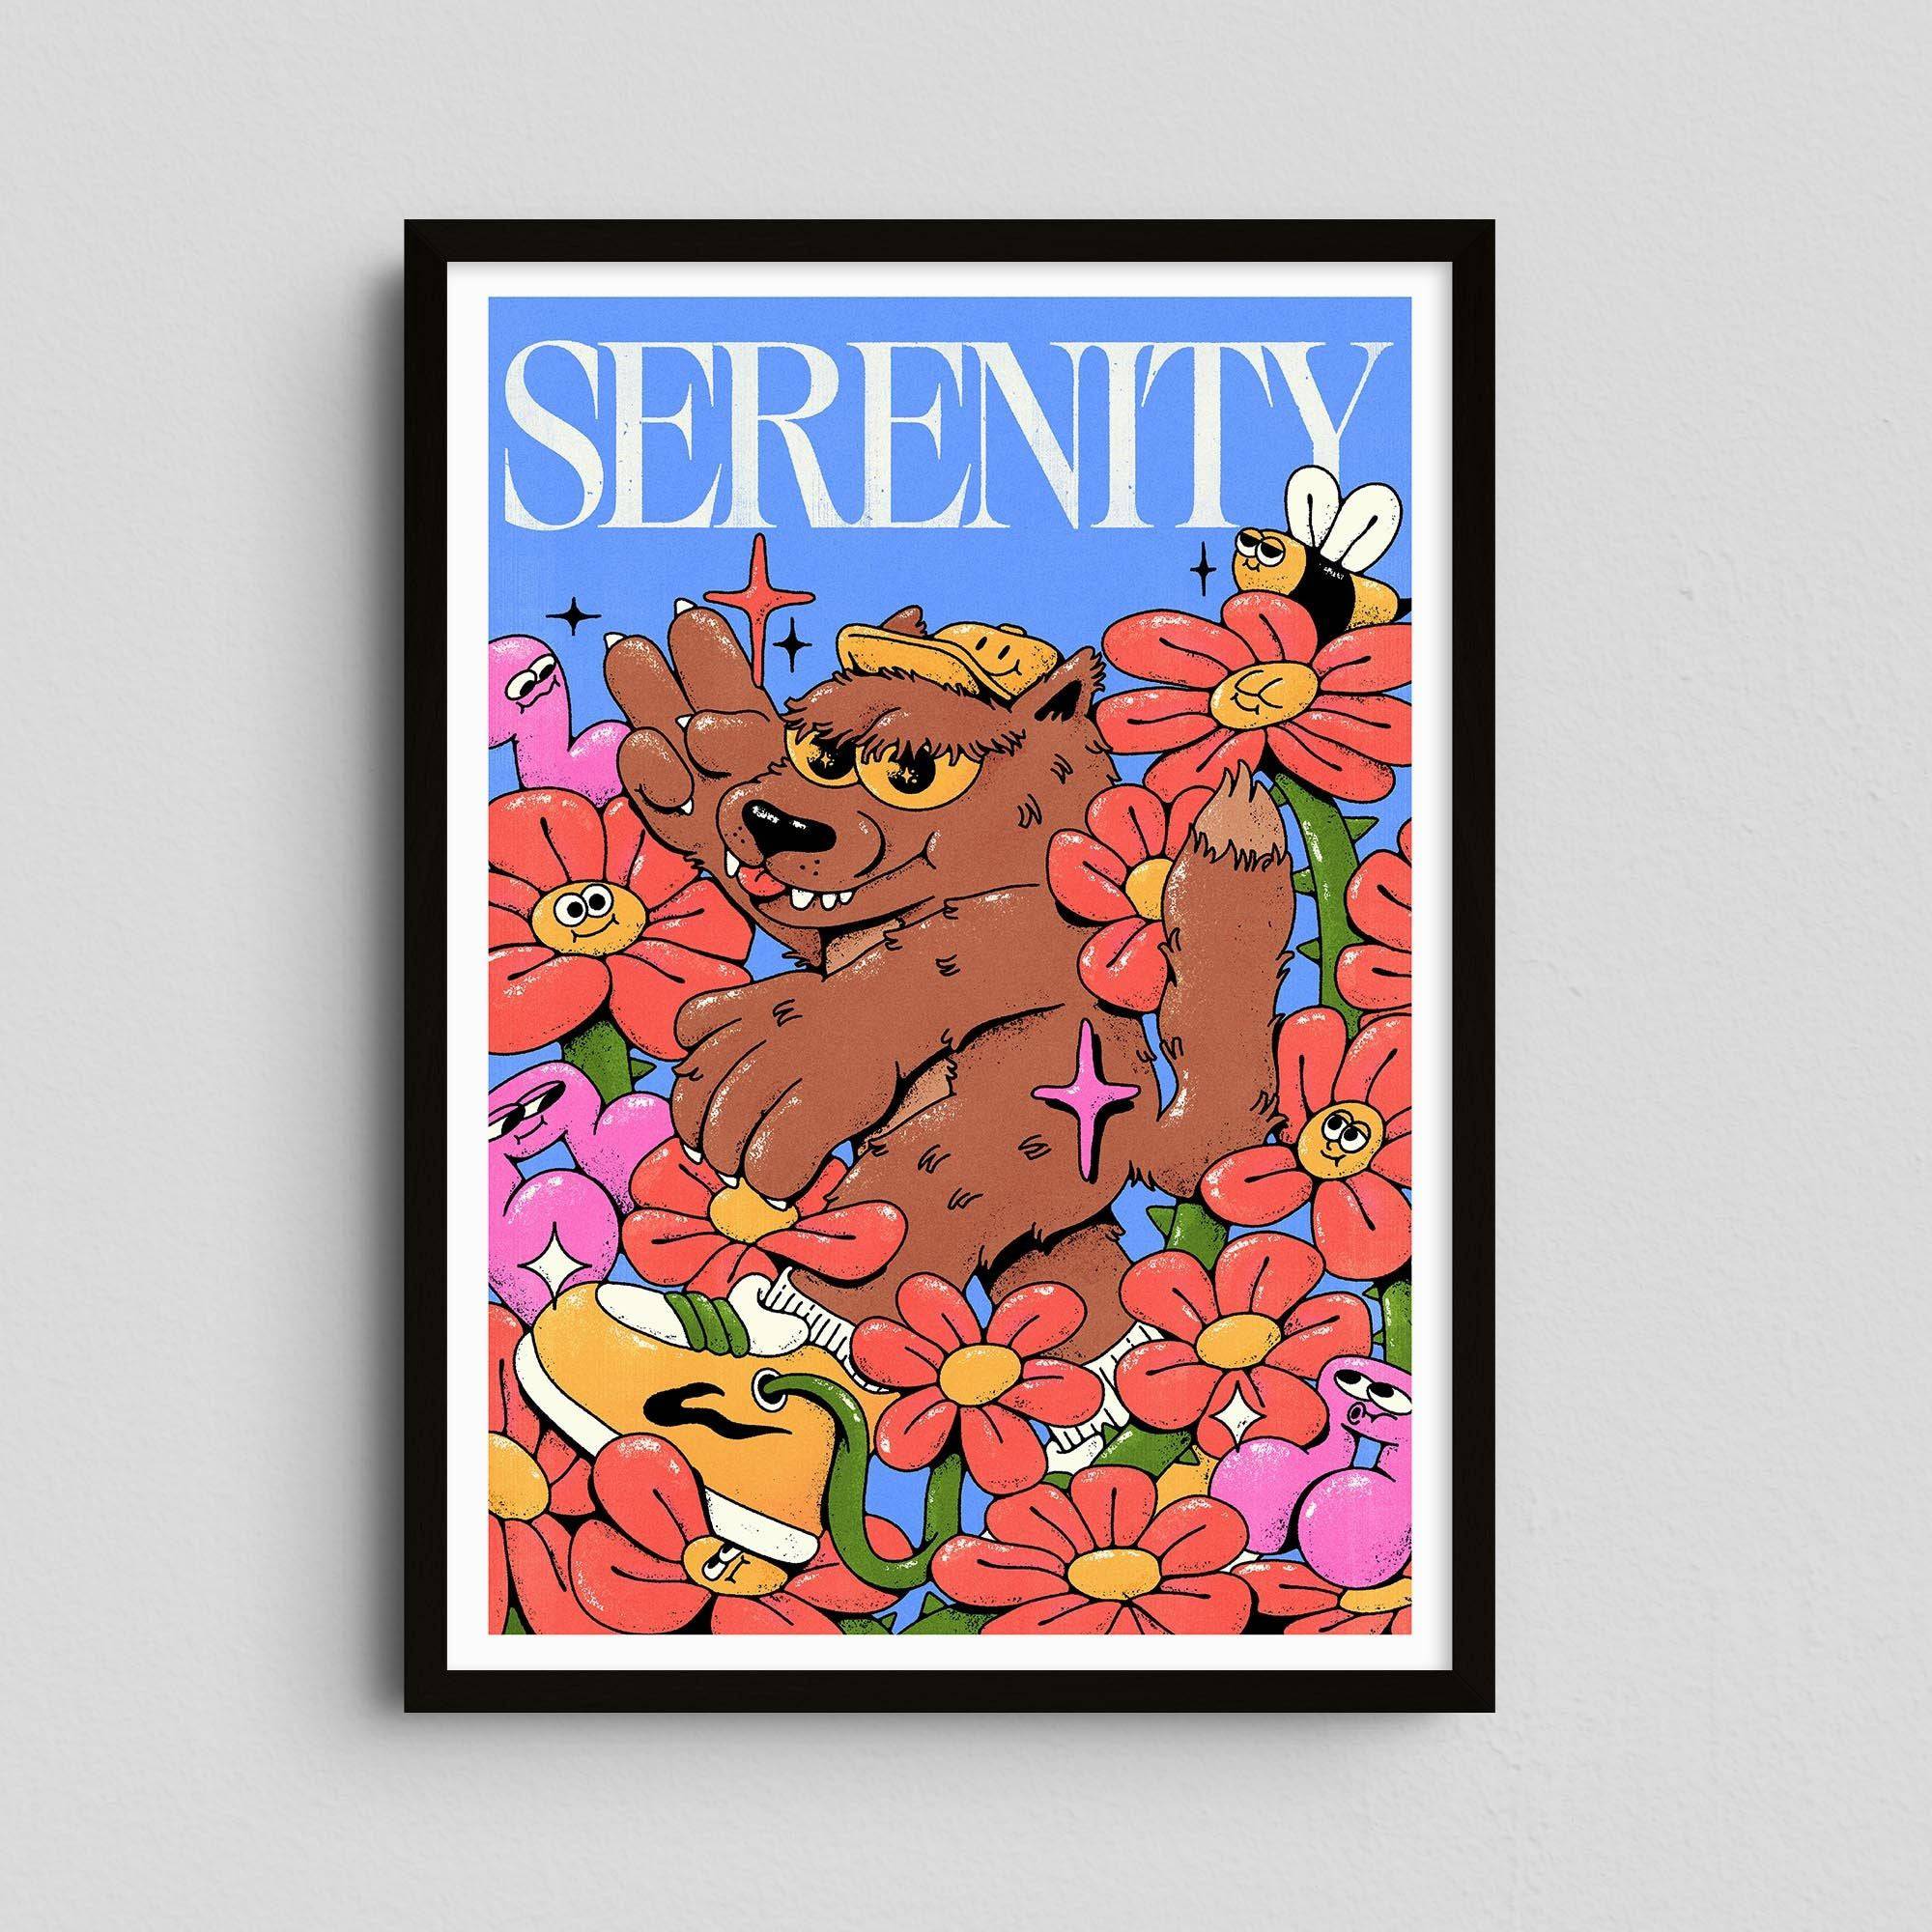 Serenity - My Sunbeam